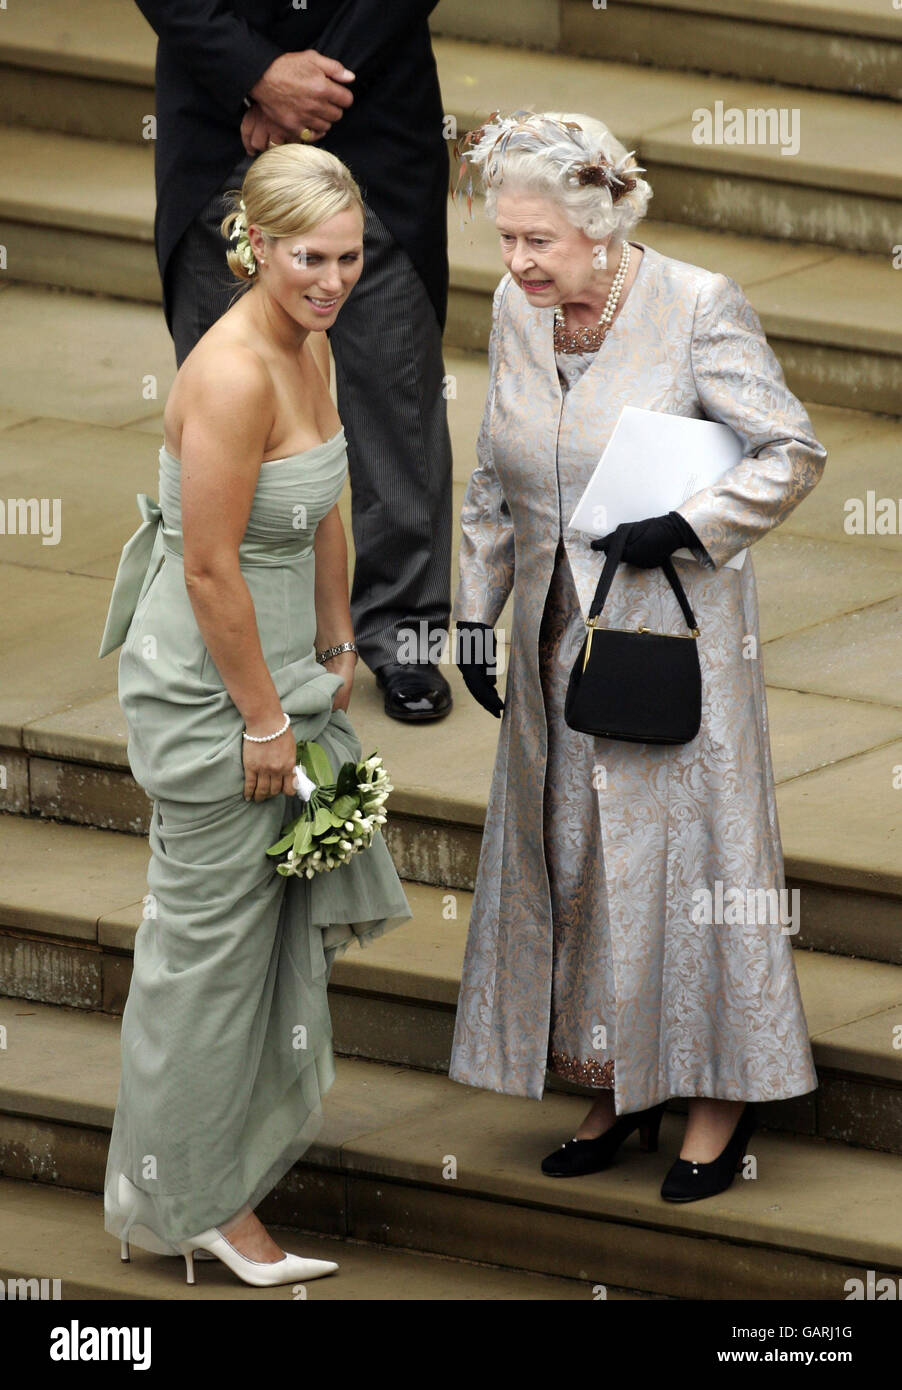 Königin Elizabeth II. Spricht mit ihrer Enkelin Zara Phillips über die Trauung von Peter Phillips und Autumn Kelly. Stockfoto